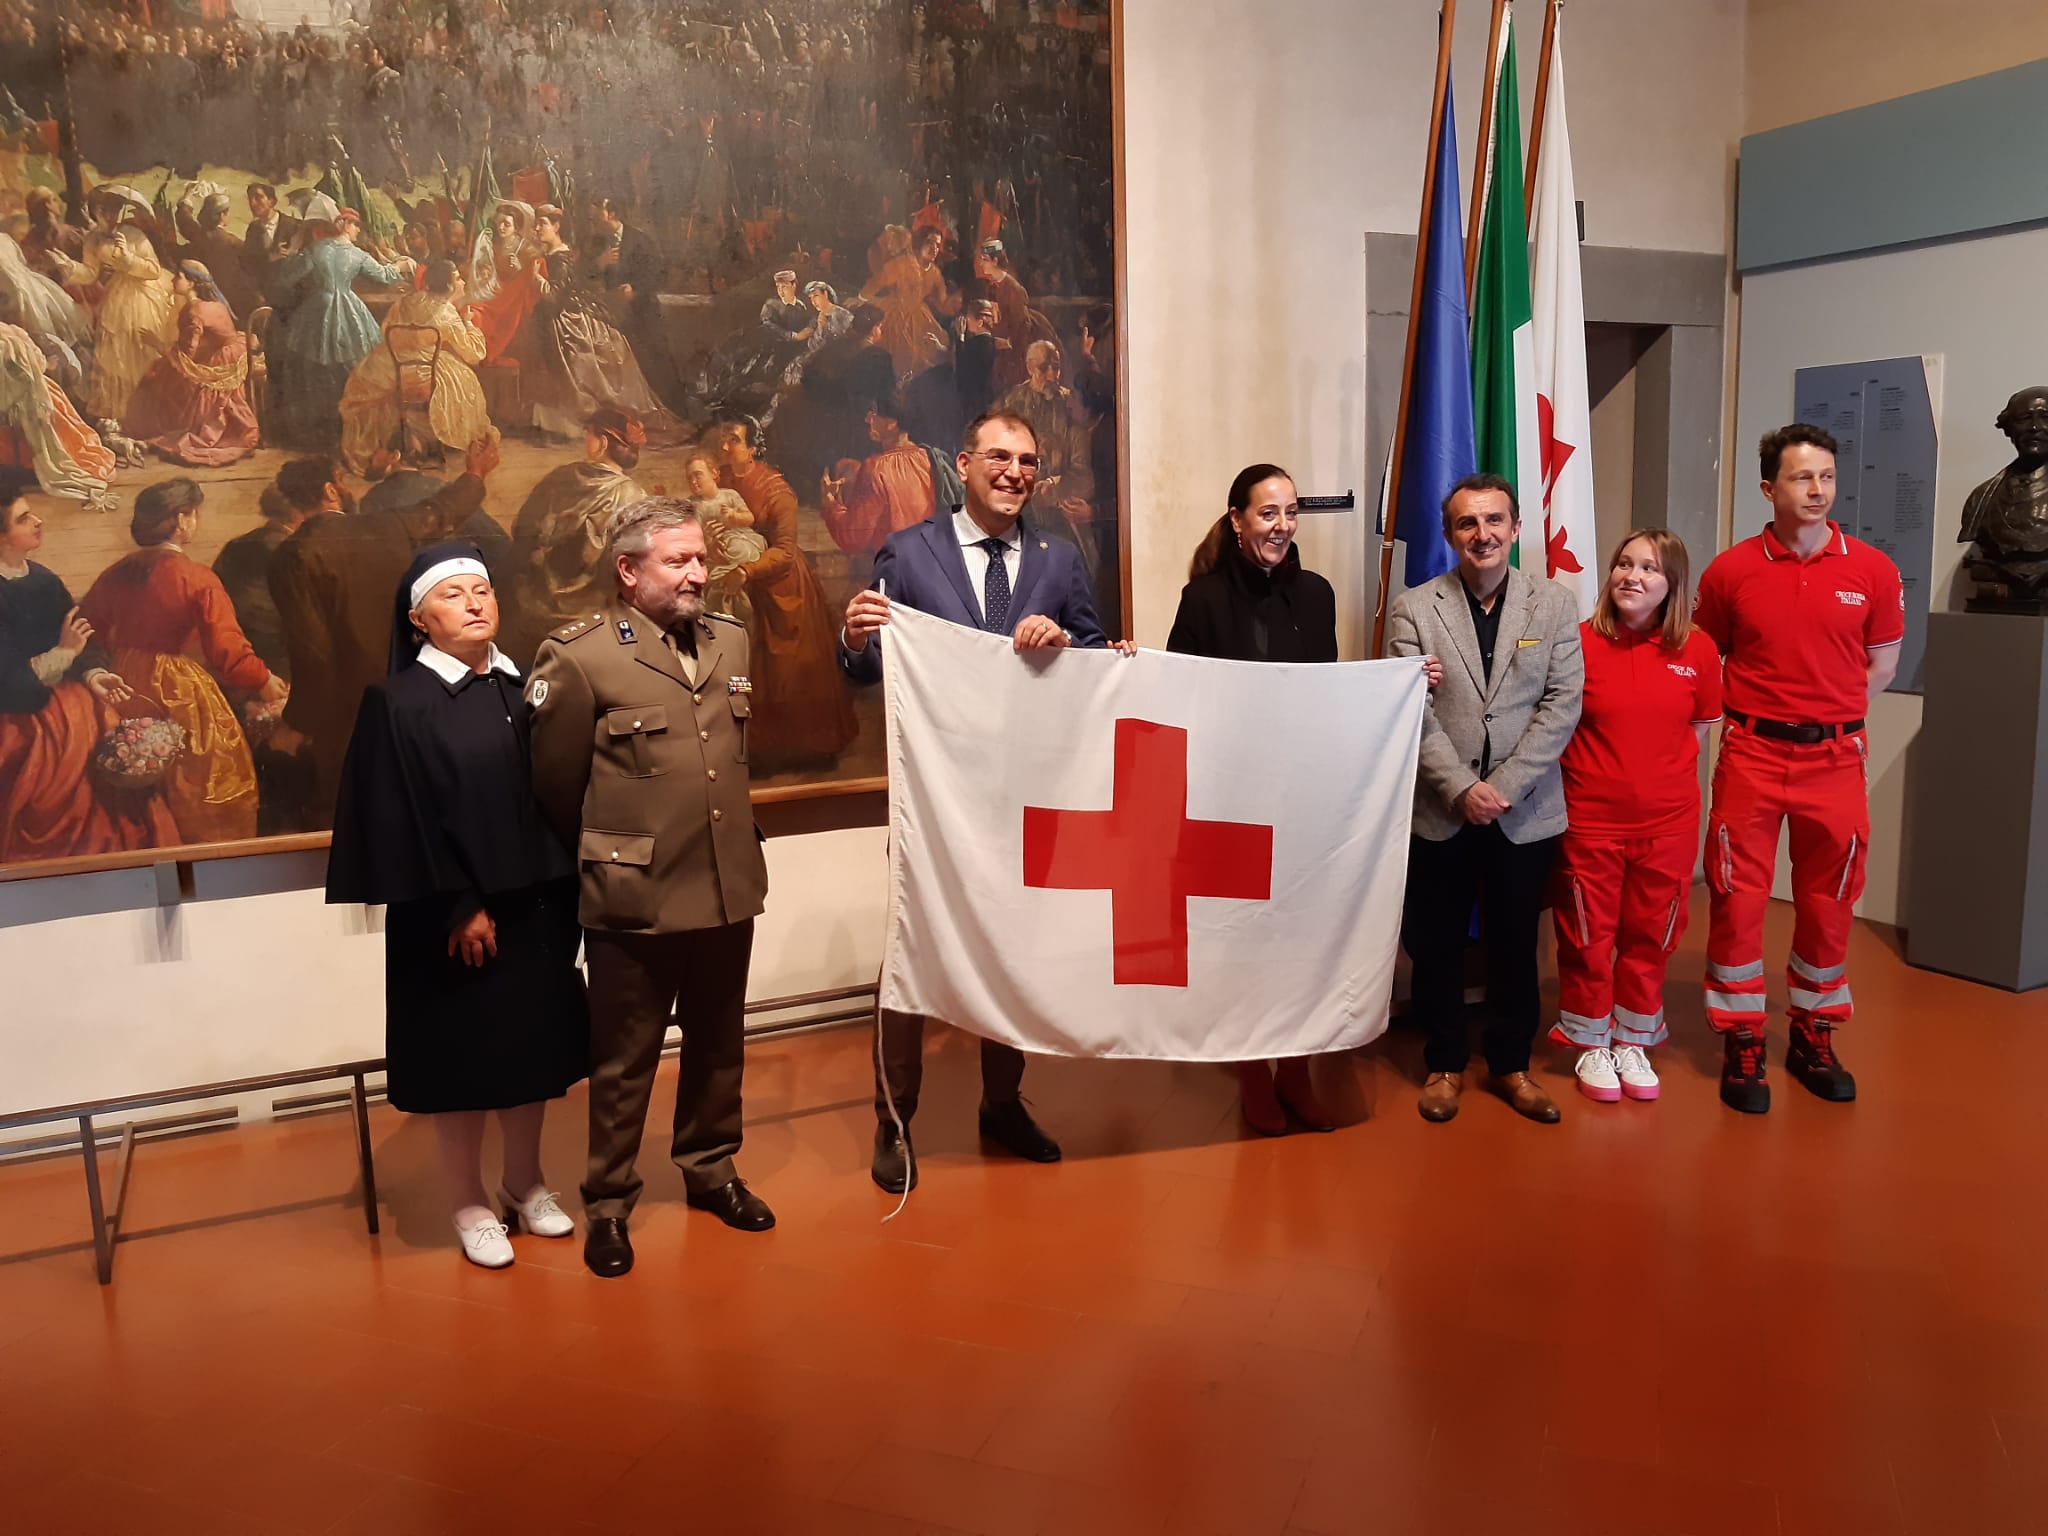 Consegna bandiera Croce Rossa in Palazzo Vecchio